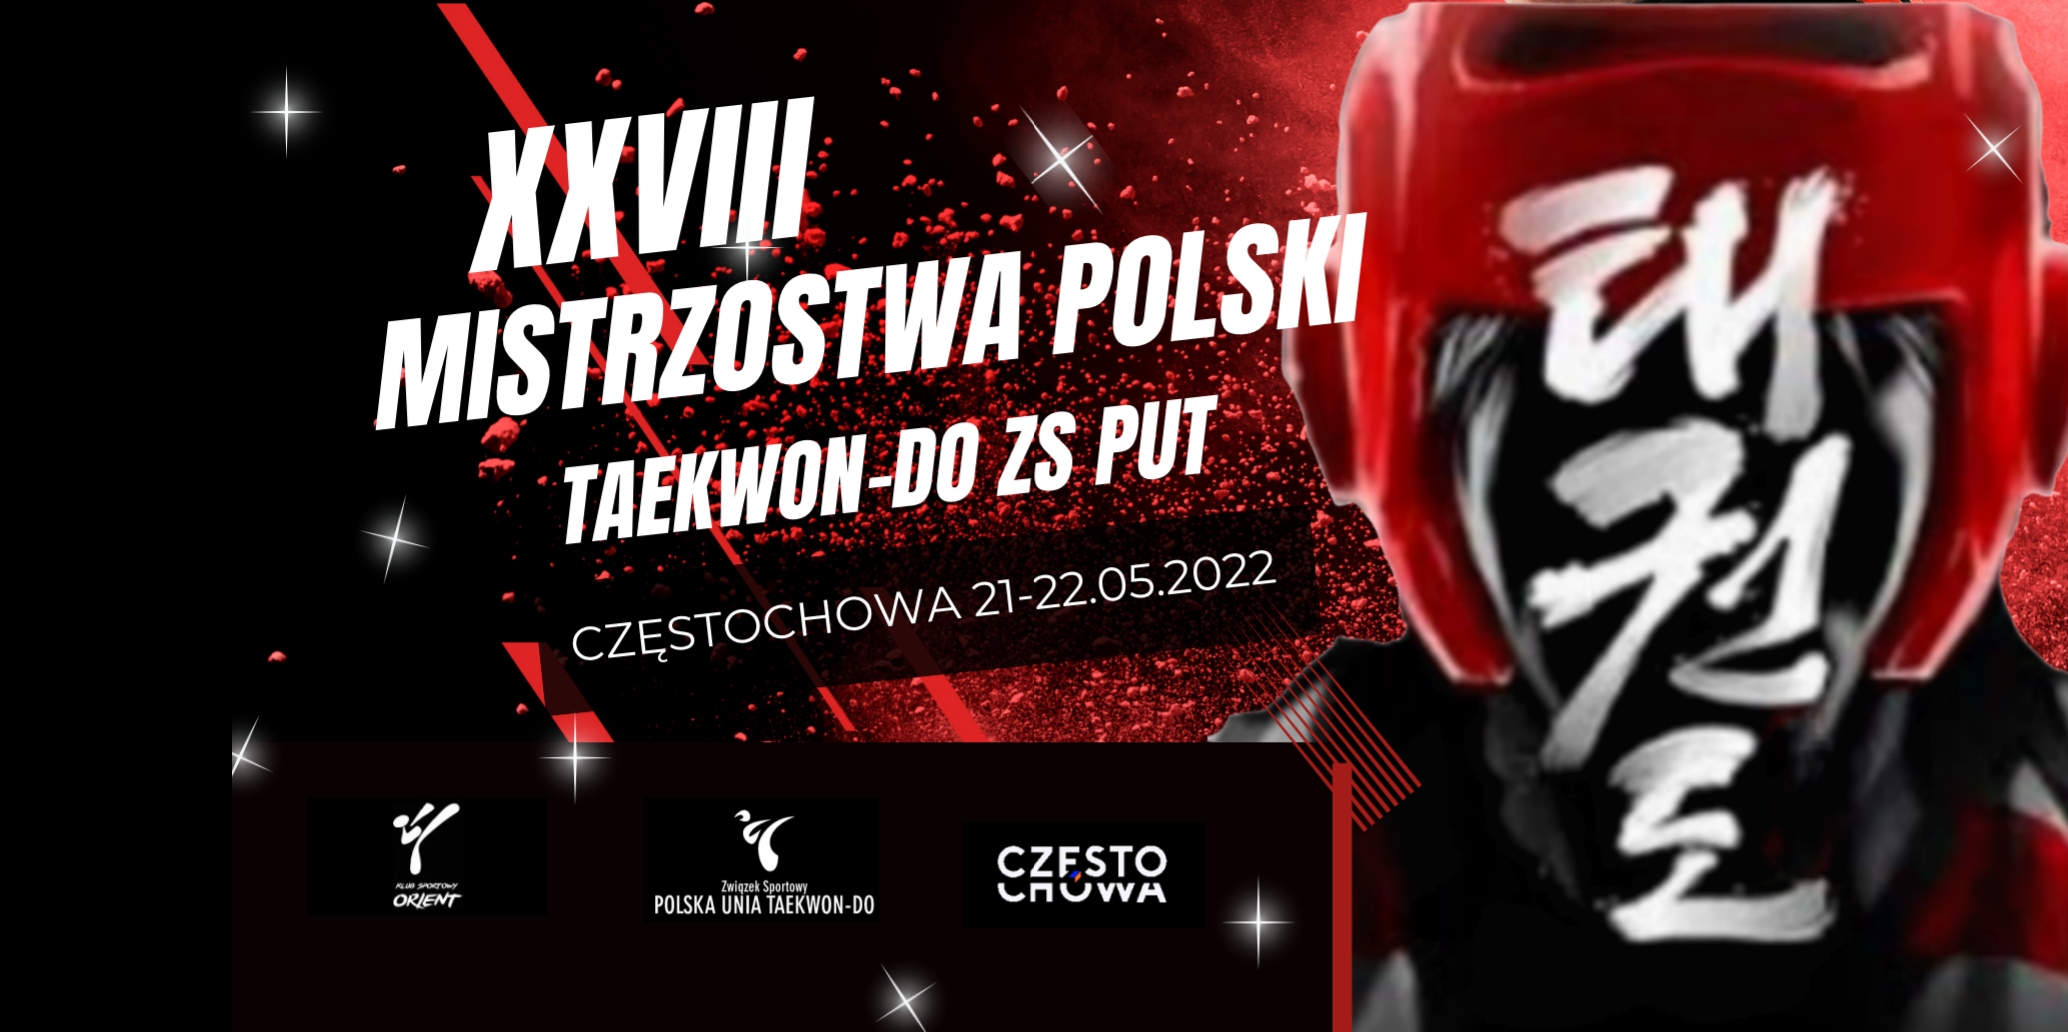 You are currently viewing XXVIII Mistrzostwa Polski w Taekwon-do ZS PUT – Częstochowa 21-22.05.2022